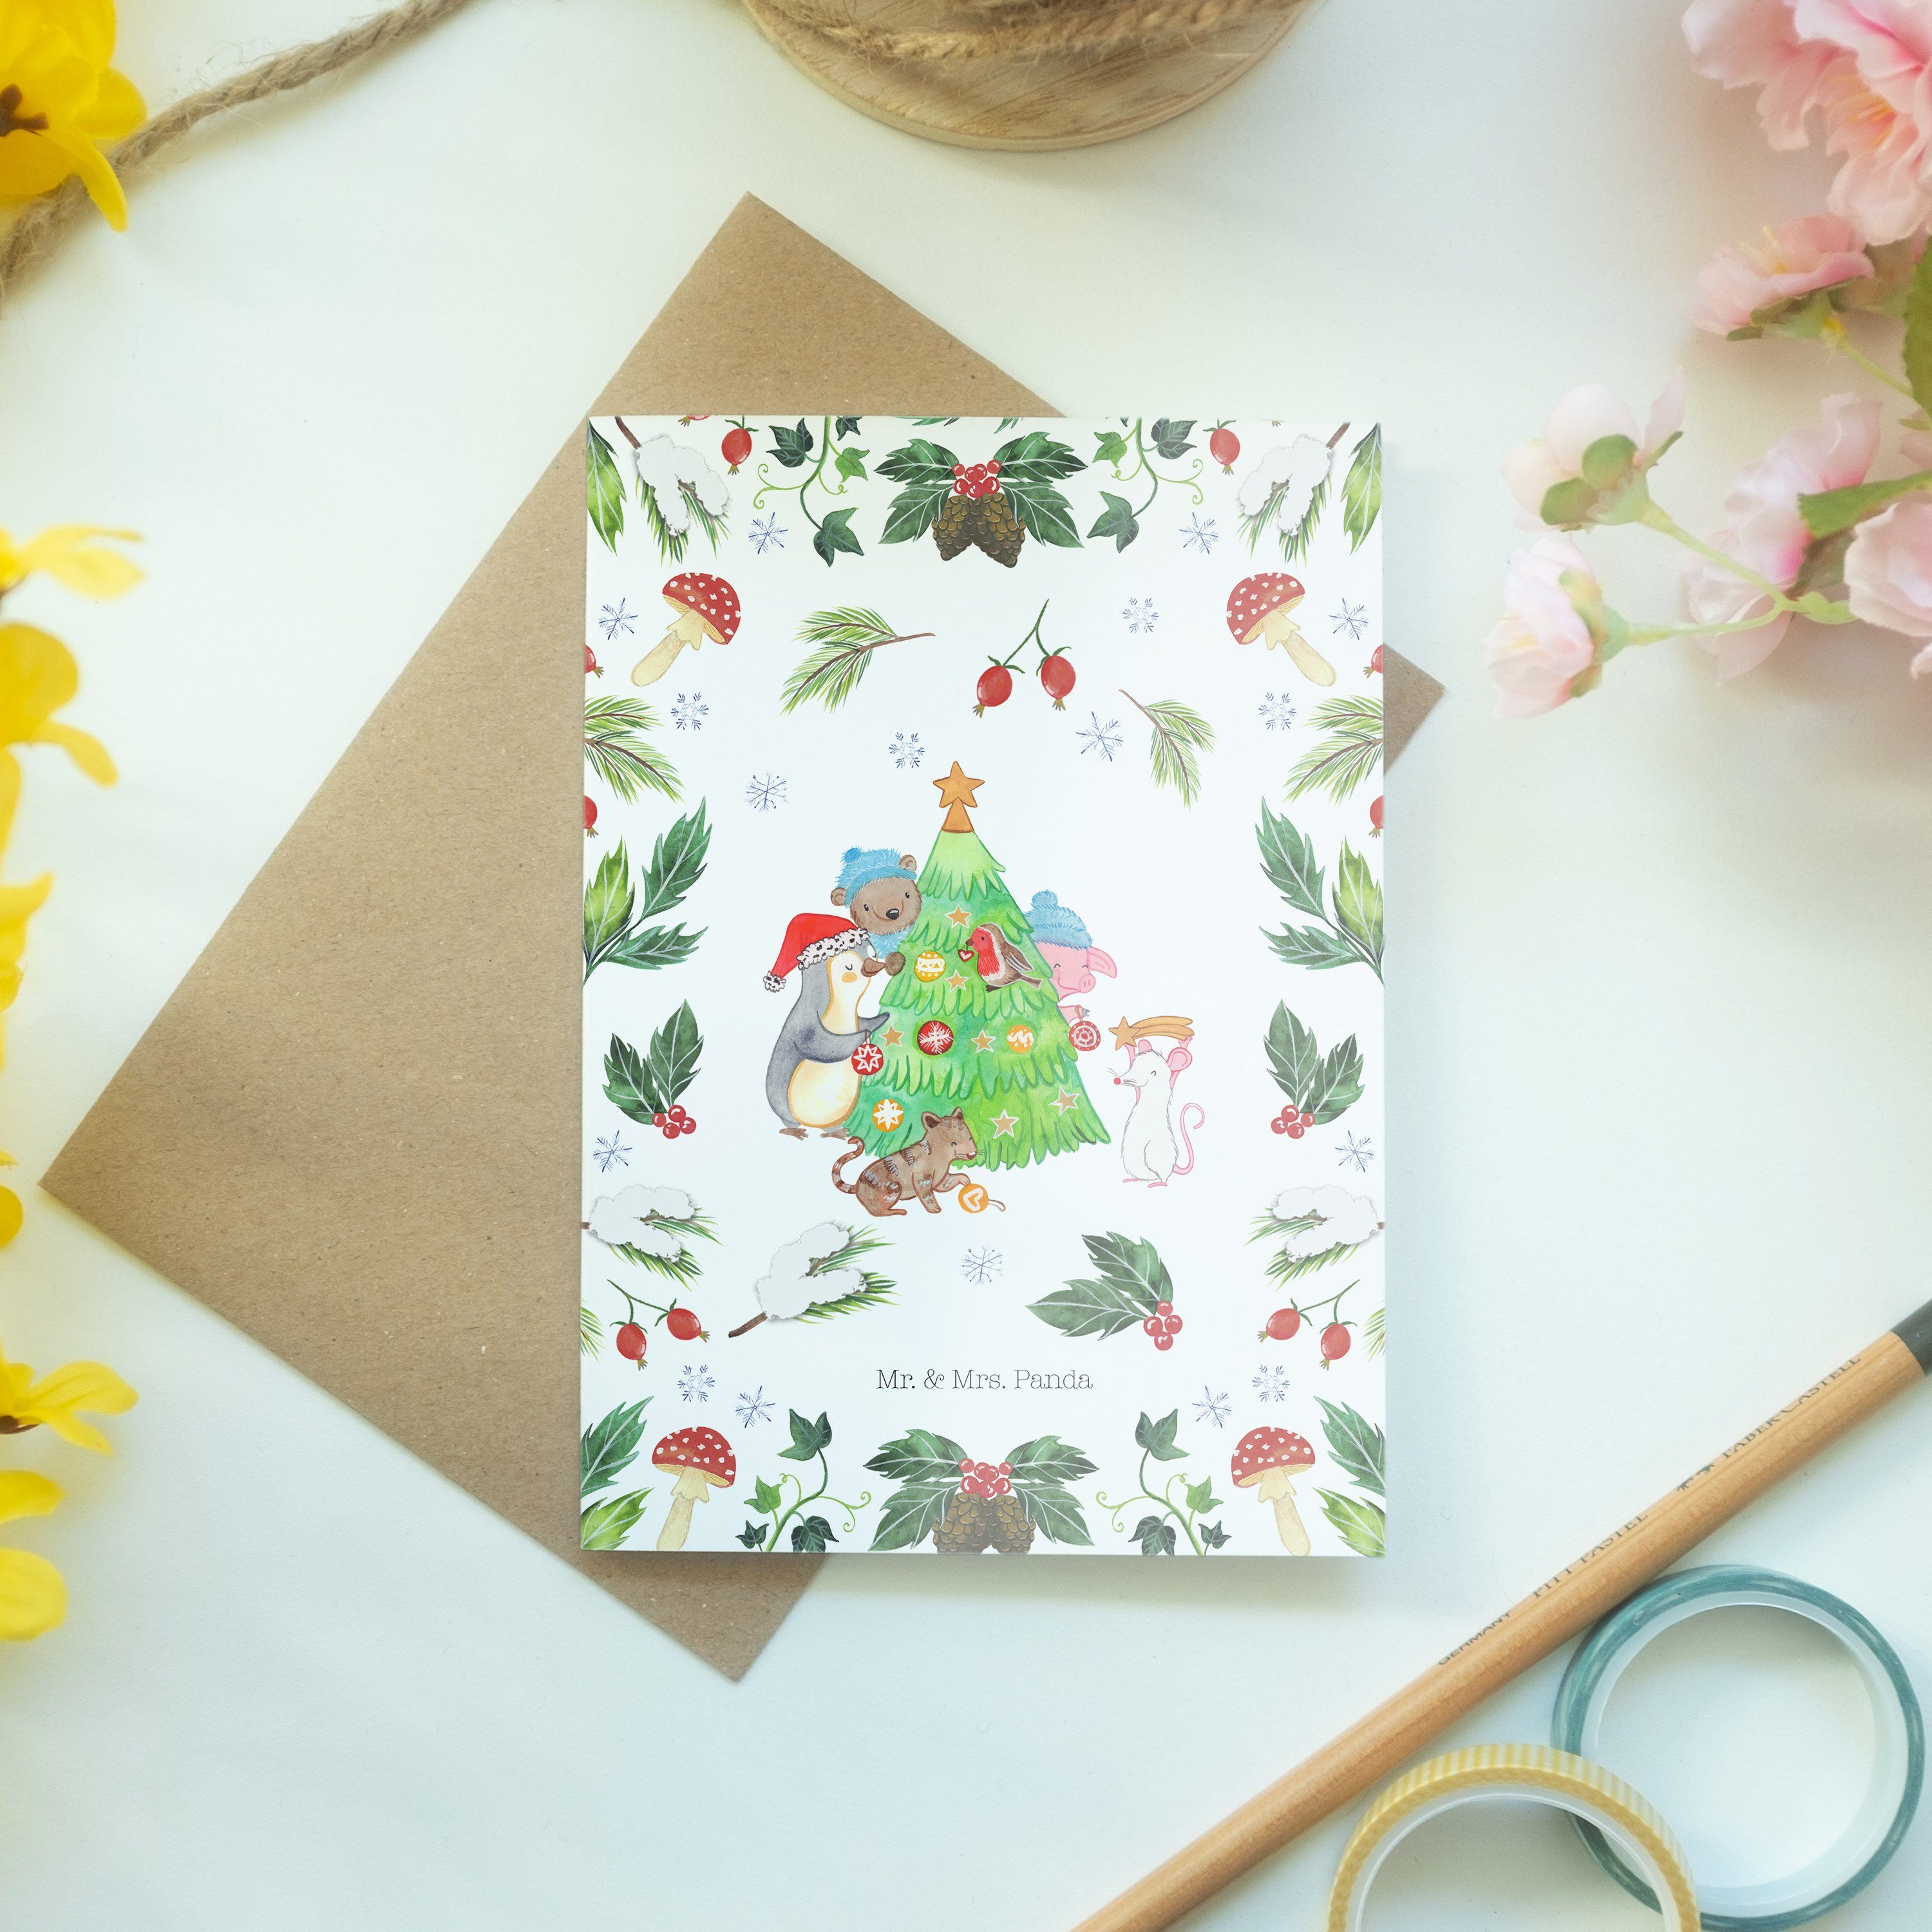 schmücken Weihnachtsbaum Geschenk, Mrs. Panda - & Geburtstagskarte, Grußkarte - Mr. Weiß Advent